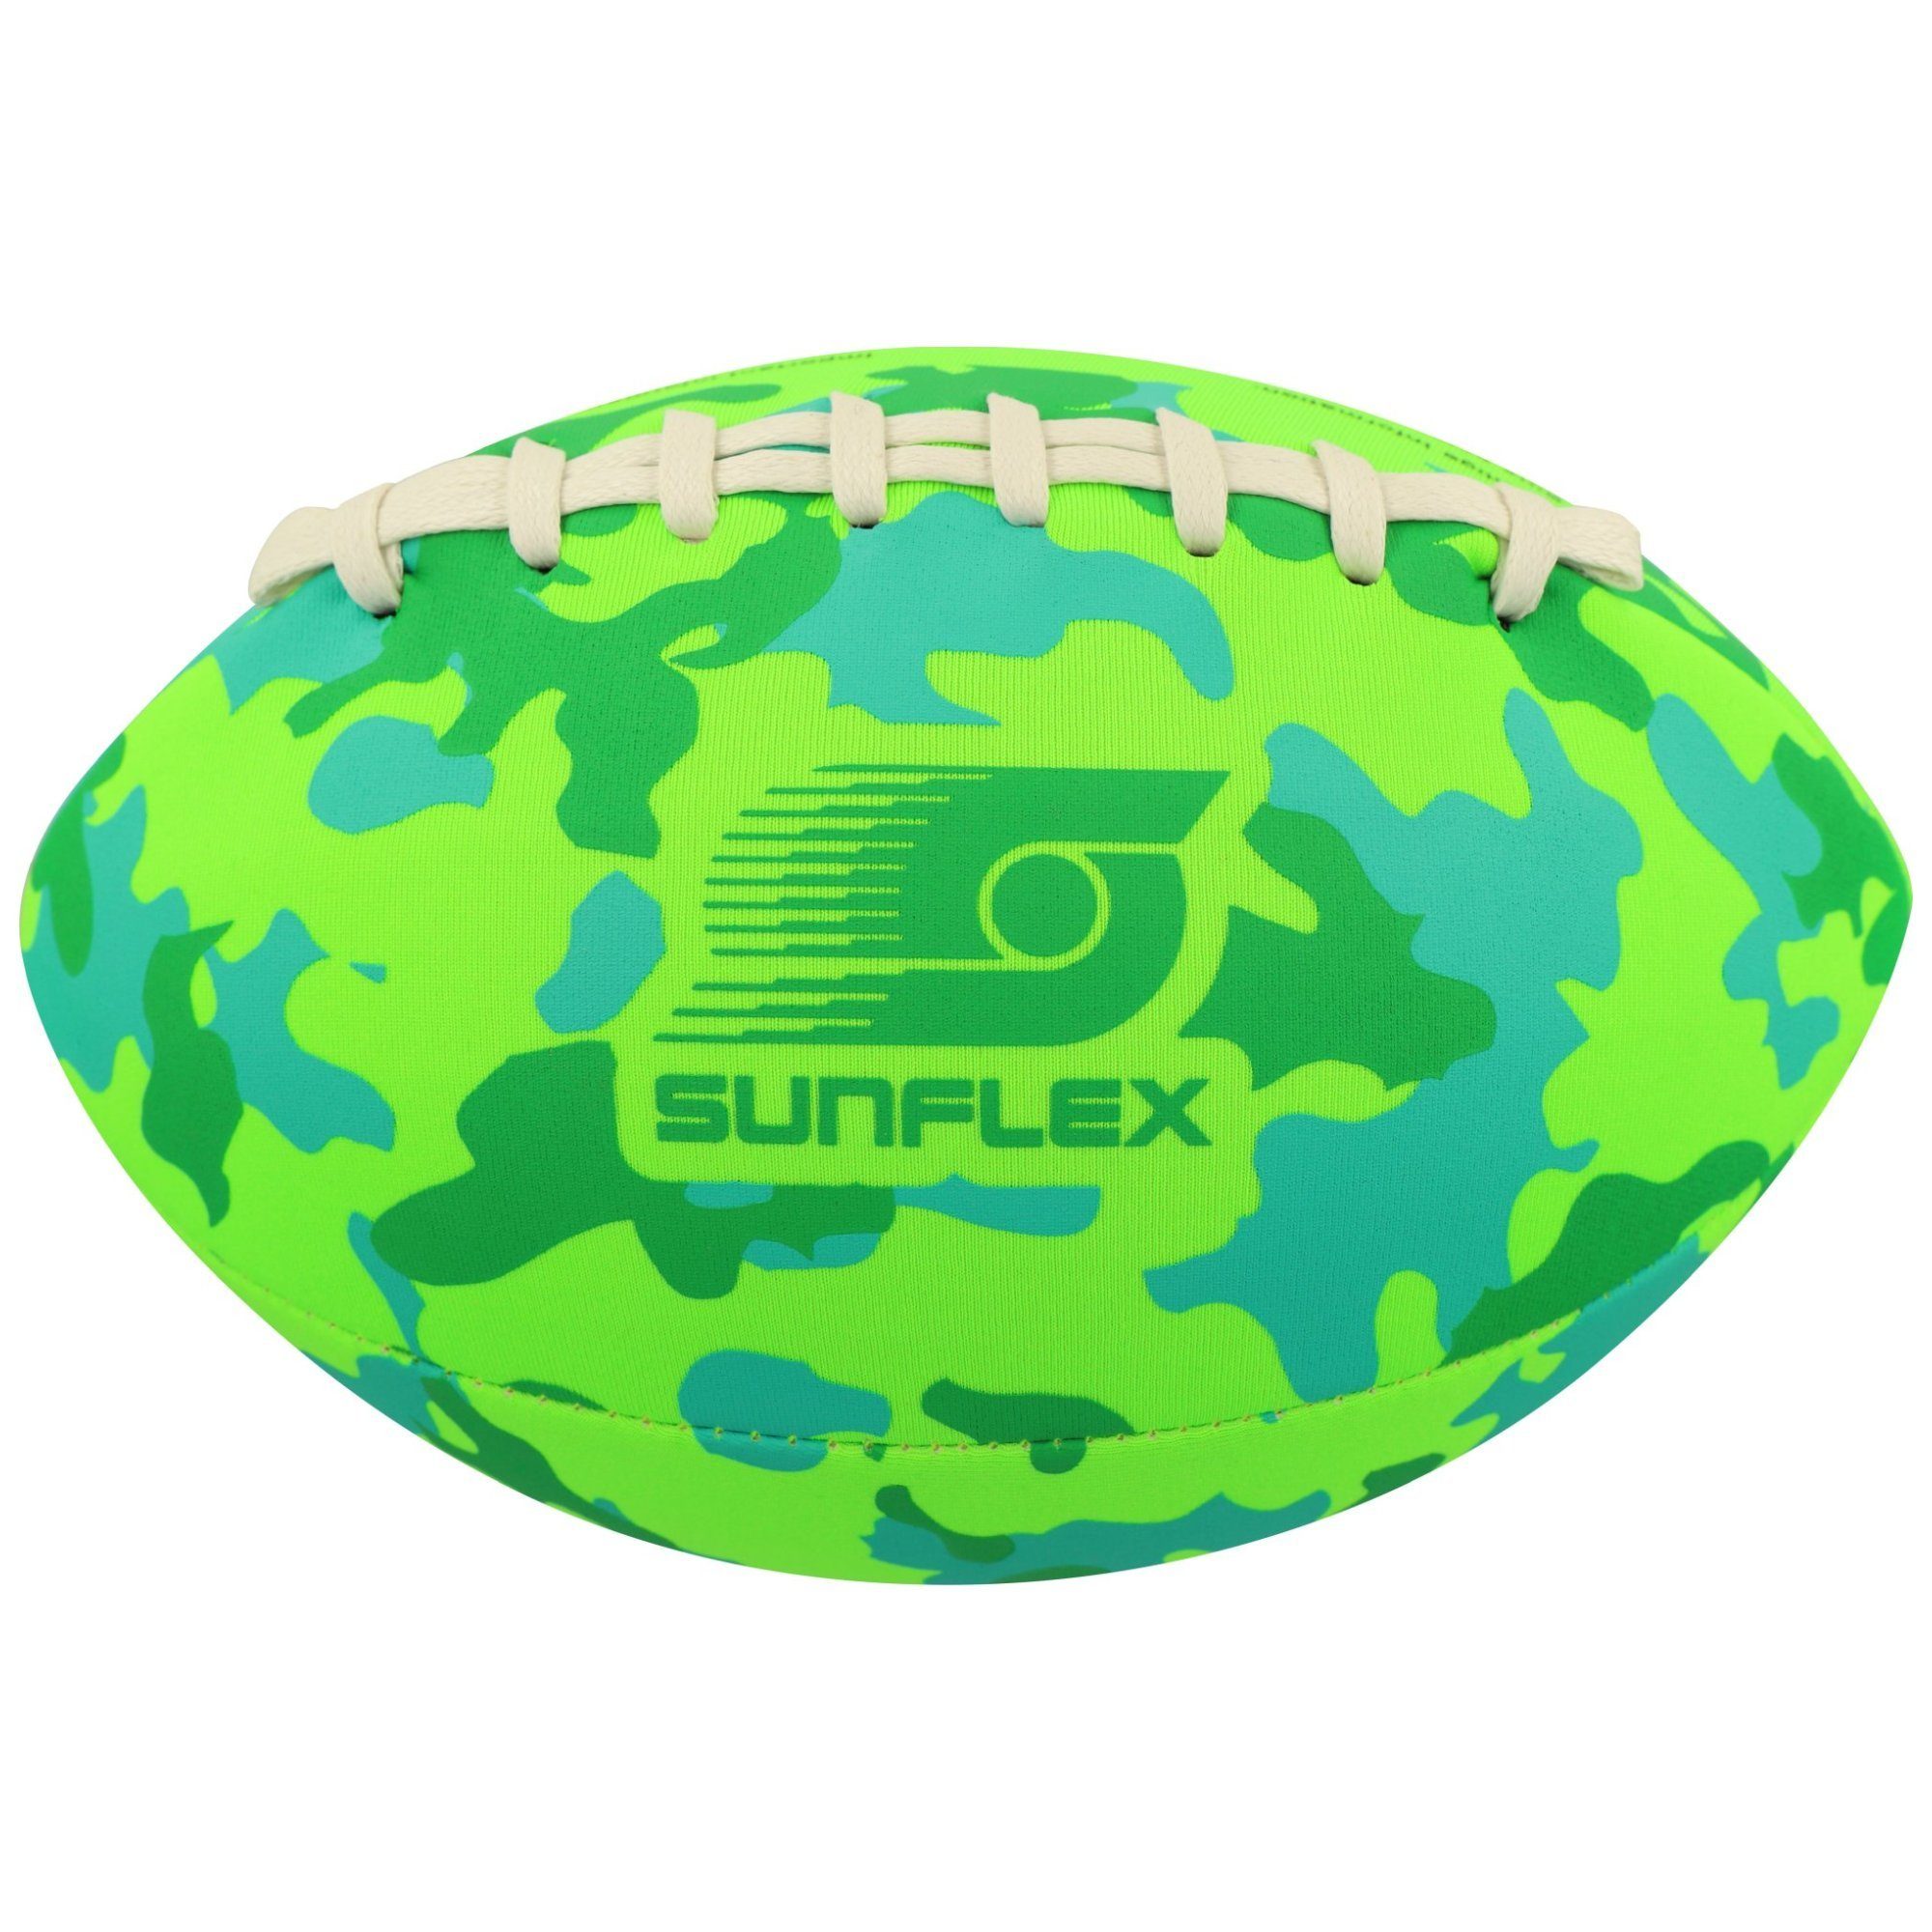 Sunflex Football sunflex American Football Camo grün